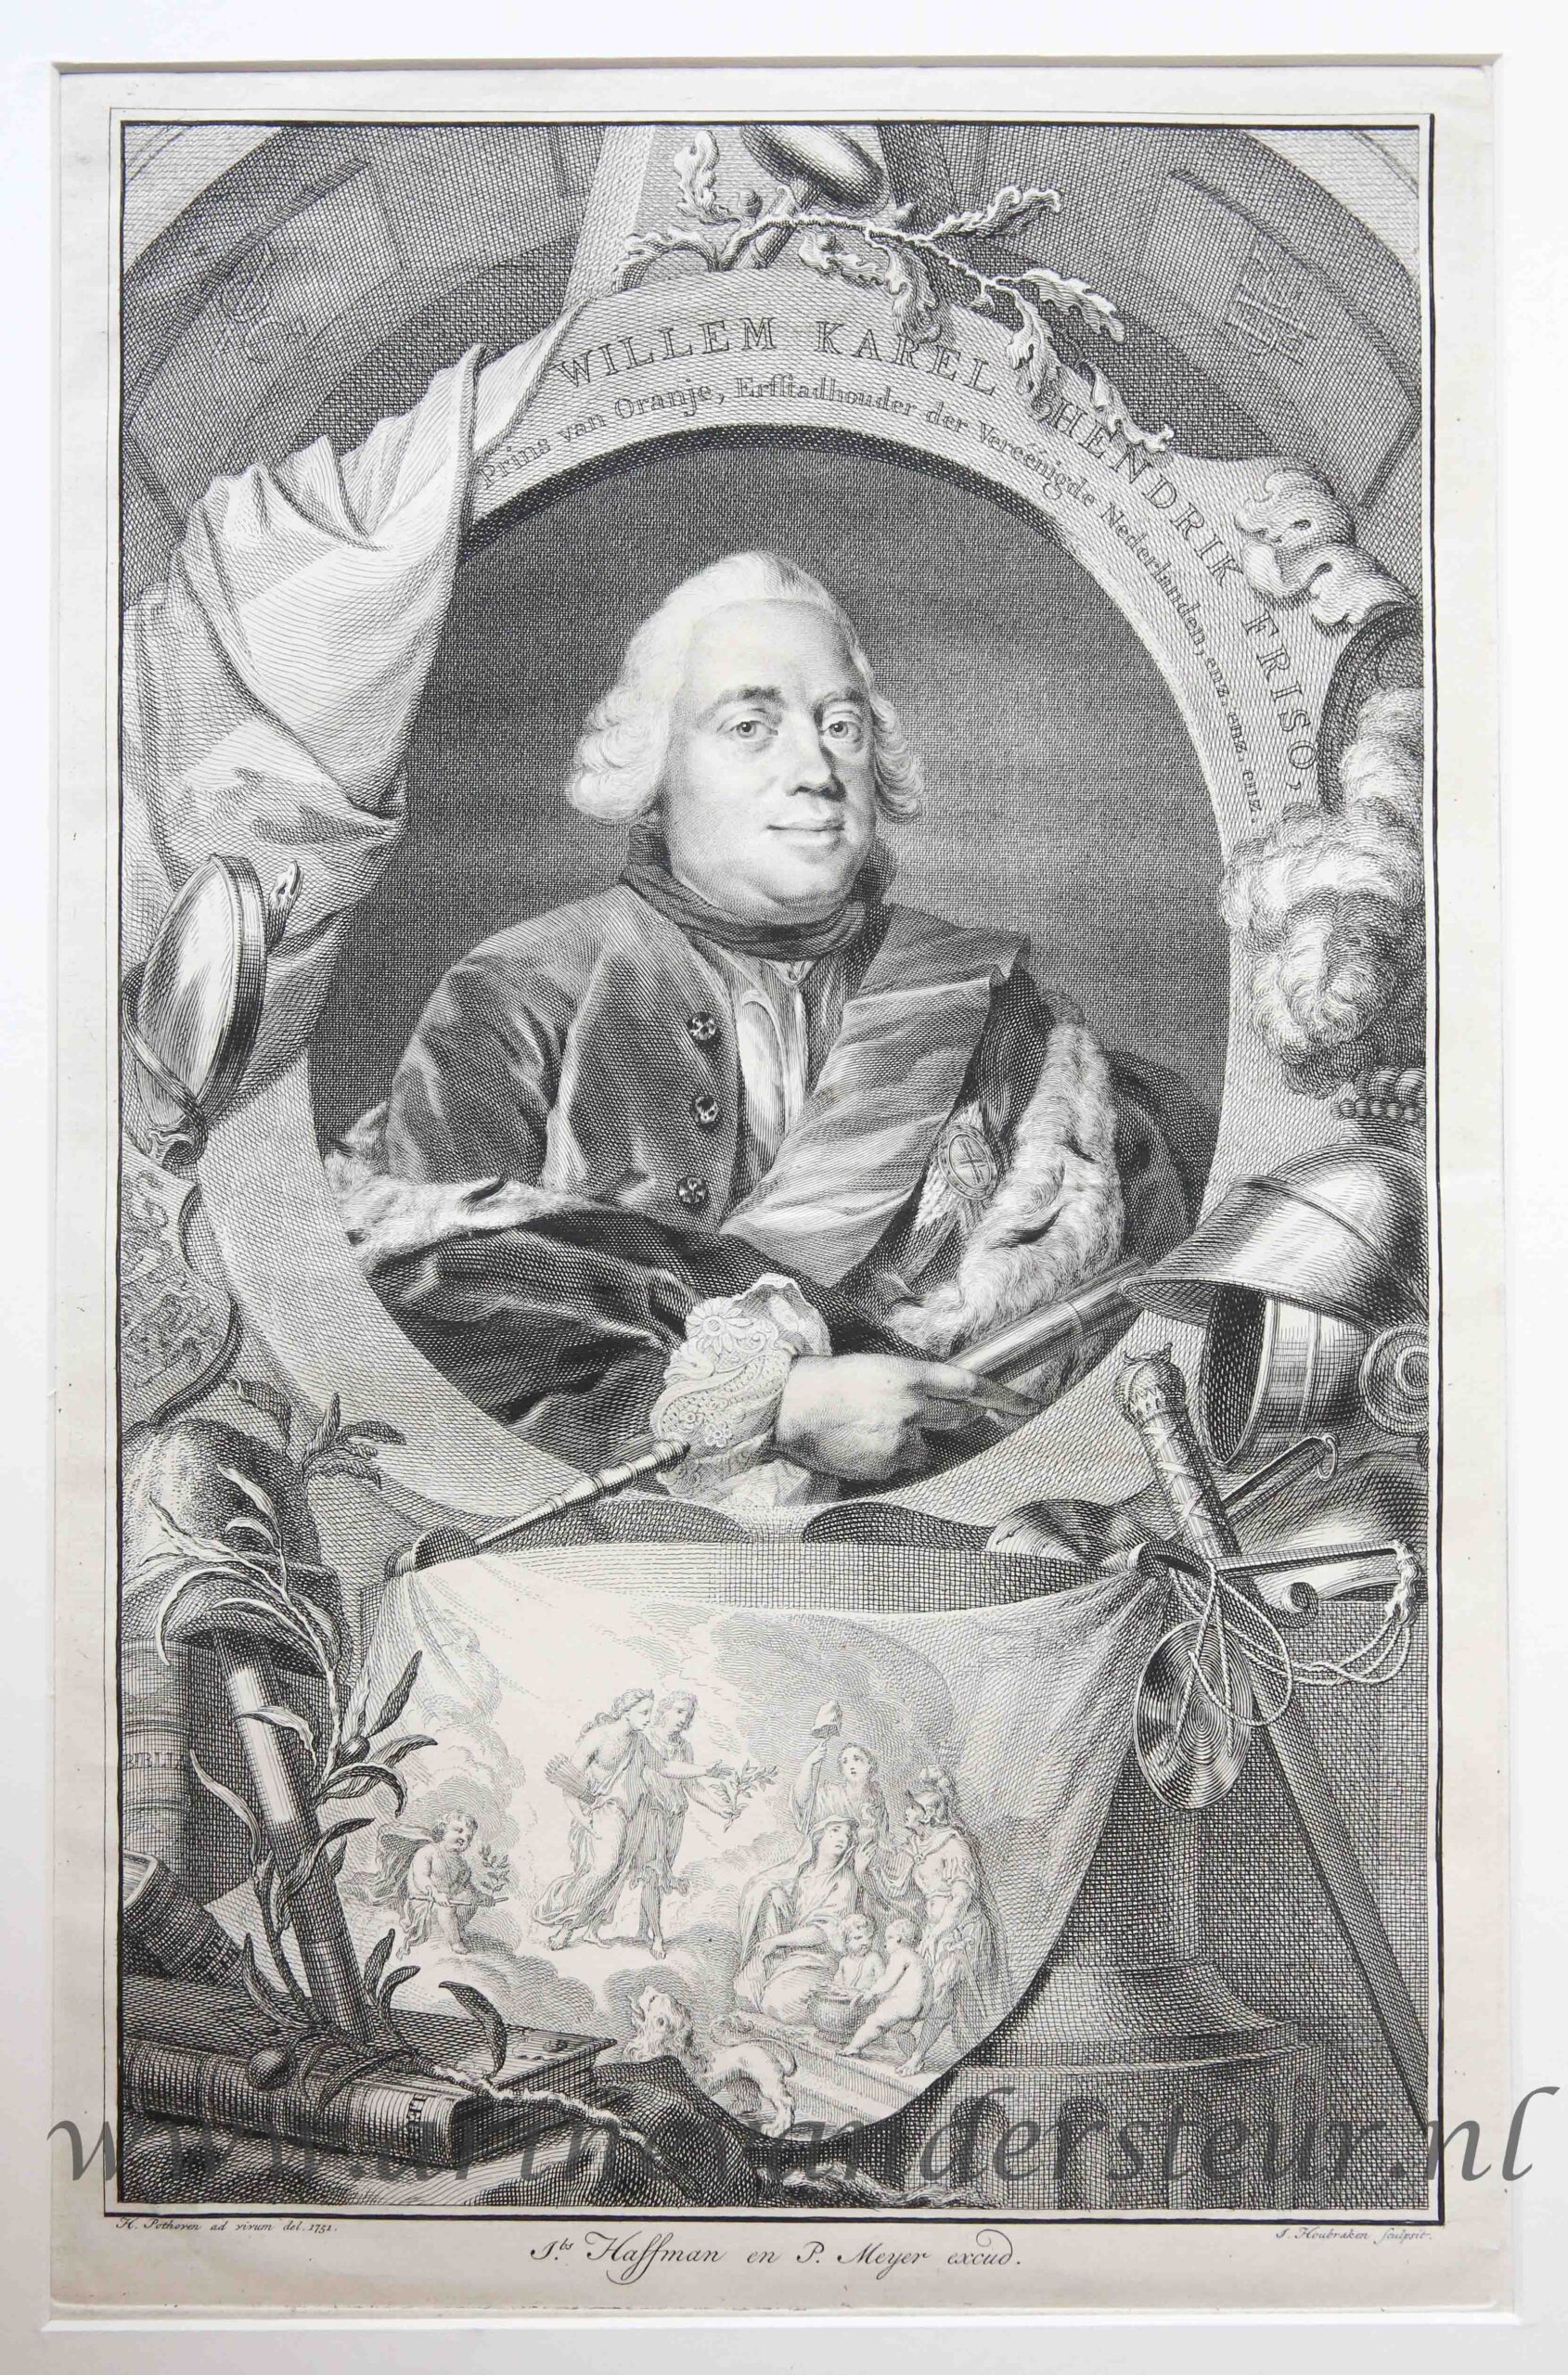 [Original etching and engraving] Portrait of Willem Karel Hendrik Friso [Willem Karel Hendrik Fruiso, Prins van Oranje, Erstadhouder der Vereenigde Nederlanden, enz. ens. enz.], 1751.